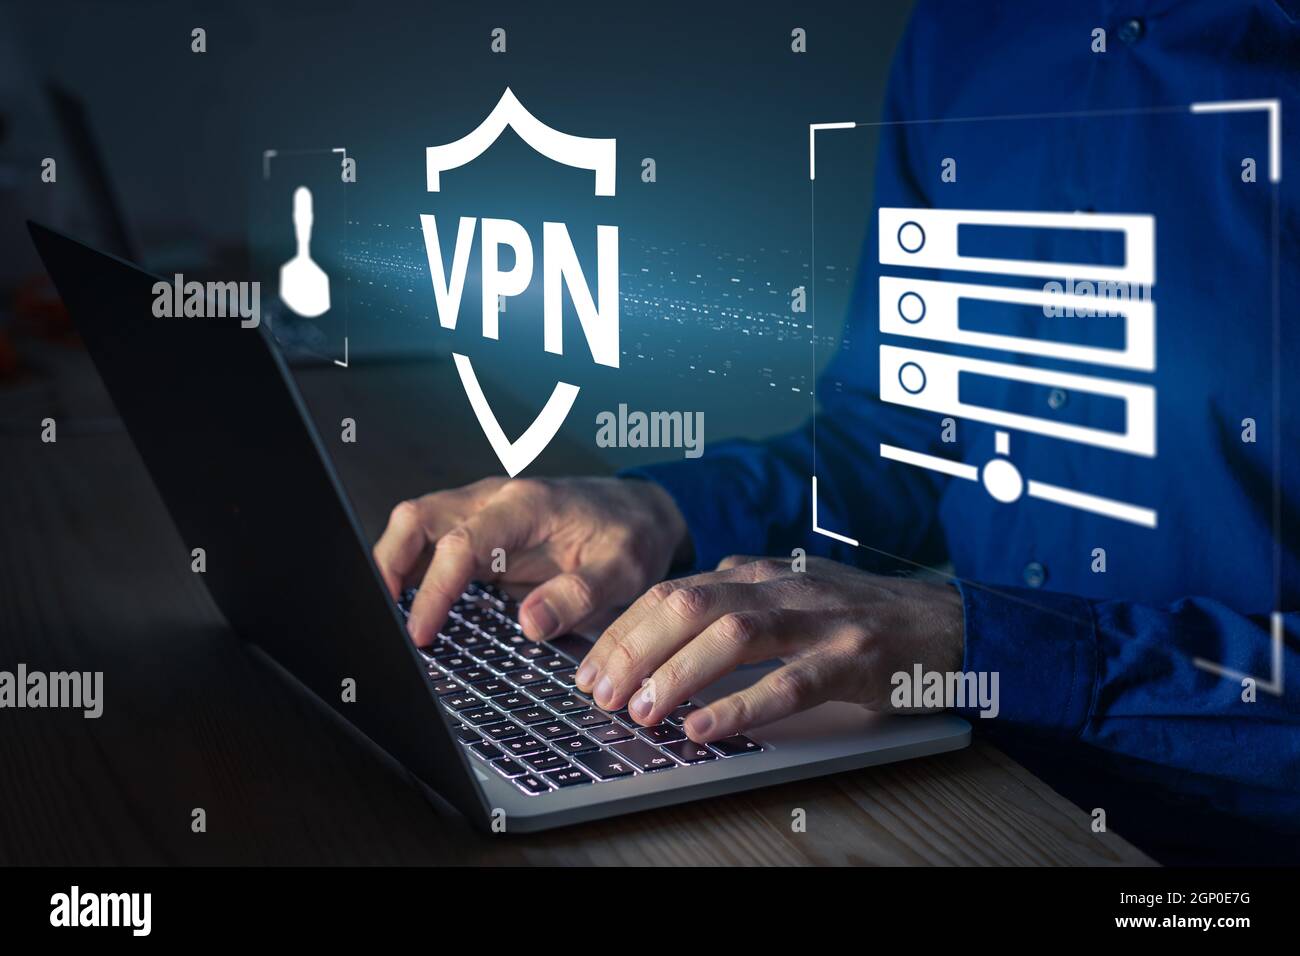 Sicheres VPN-Verbindungskonzept. Person, die die Virtual Private Network-Technologie auf einem Laptop-Computer verwendet, um einen verschlüsselten Tunnel zum Remote-Server auf Inter zu erstellen Stockfoto